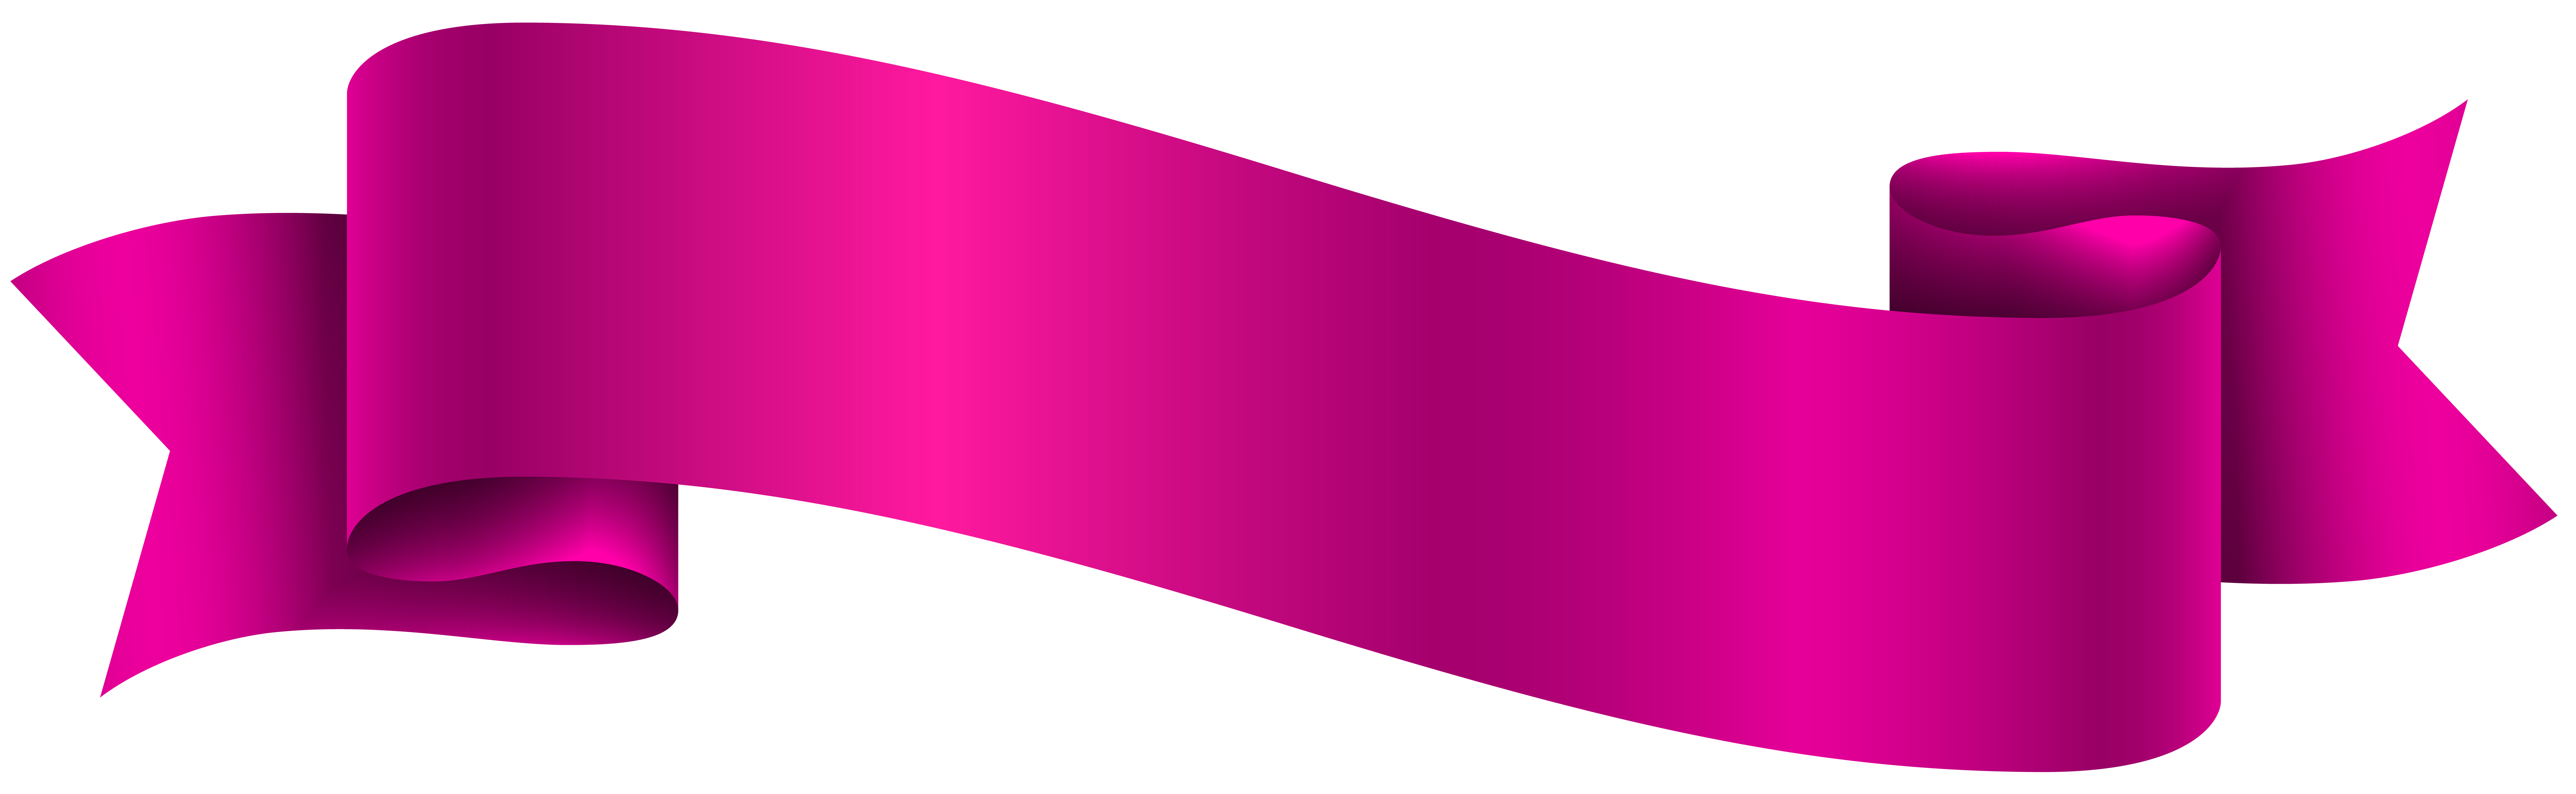 Pink banner transparent.